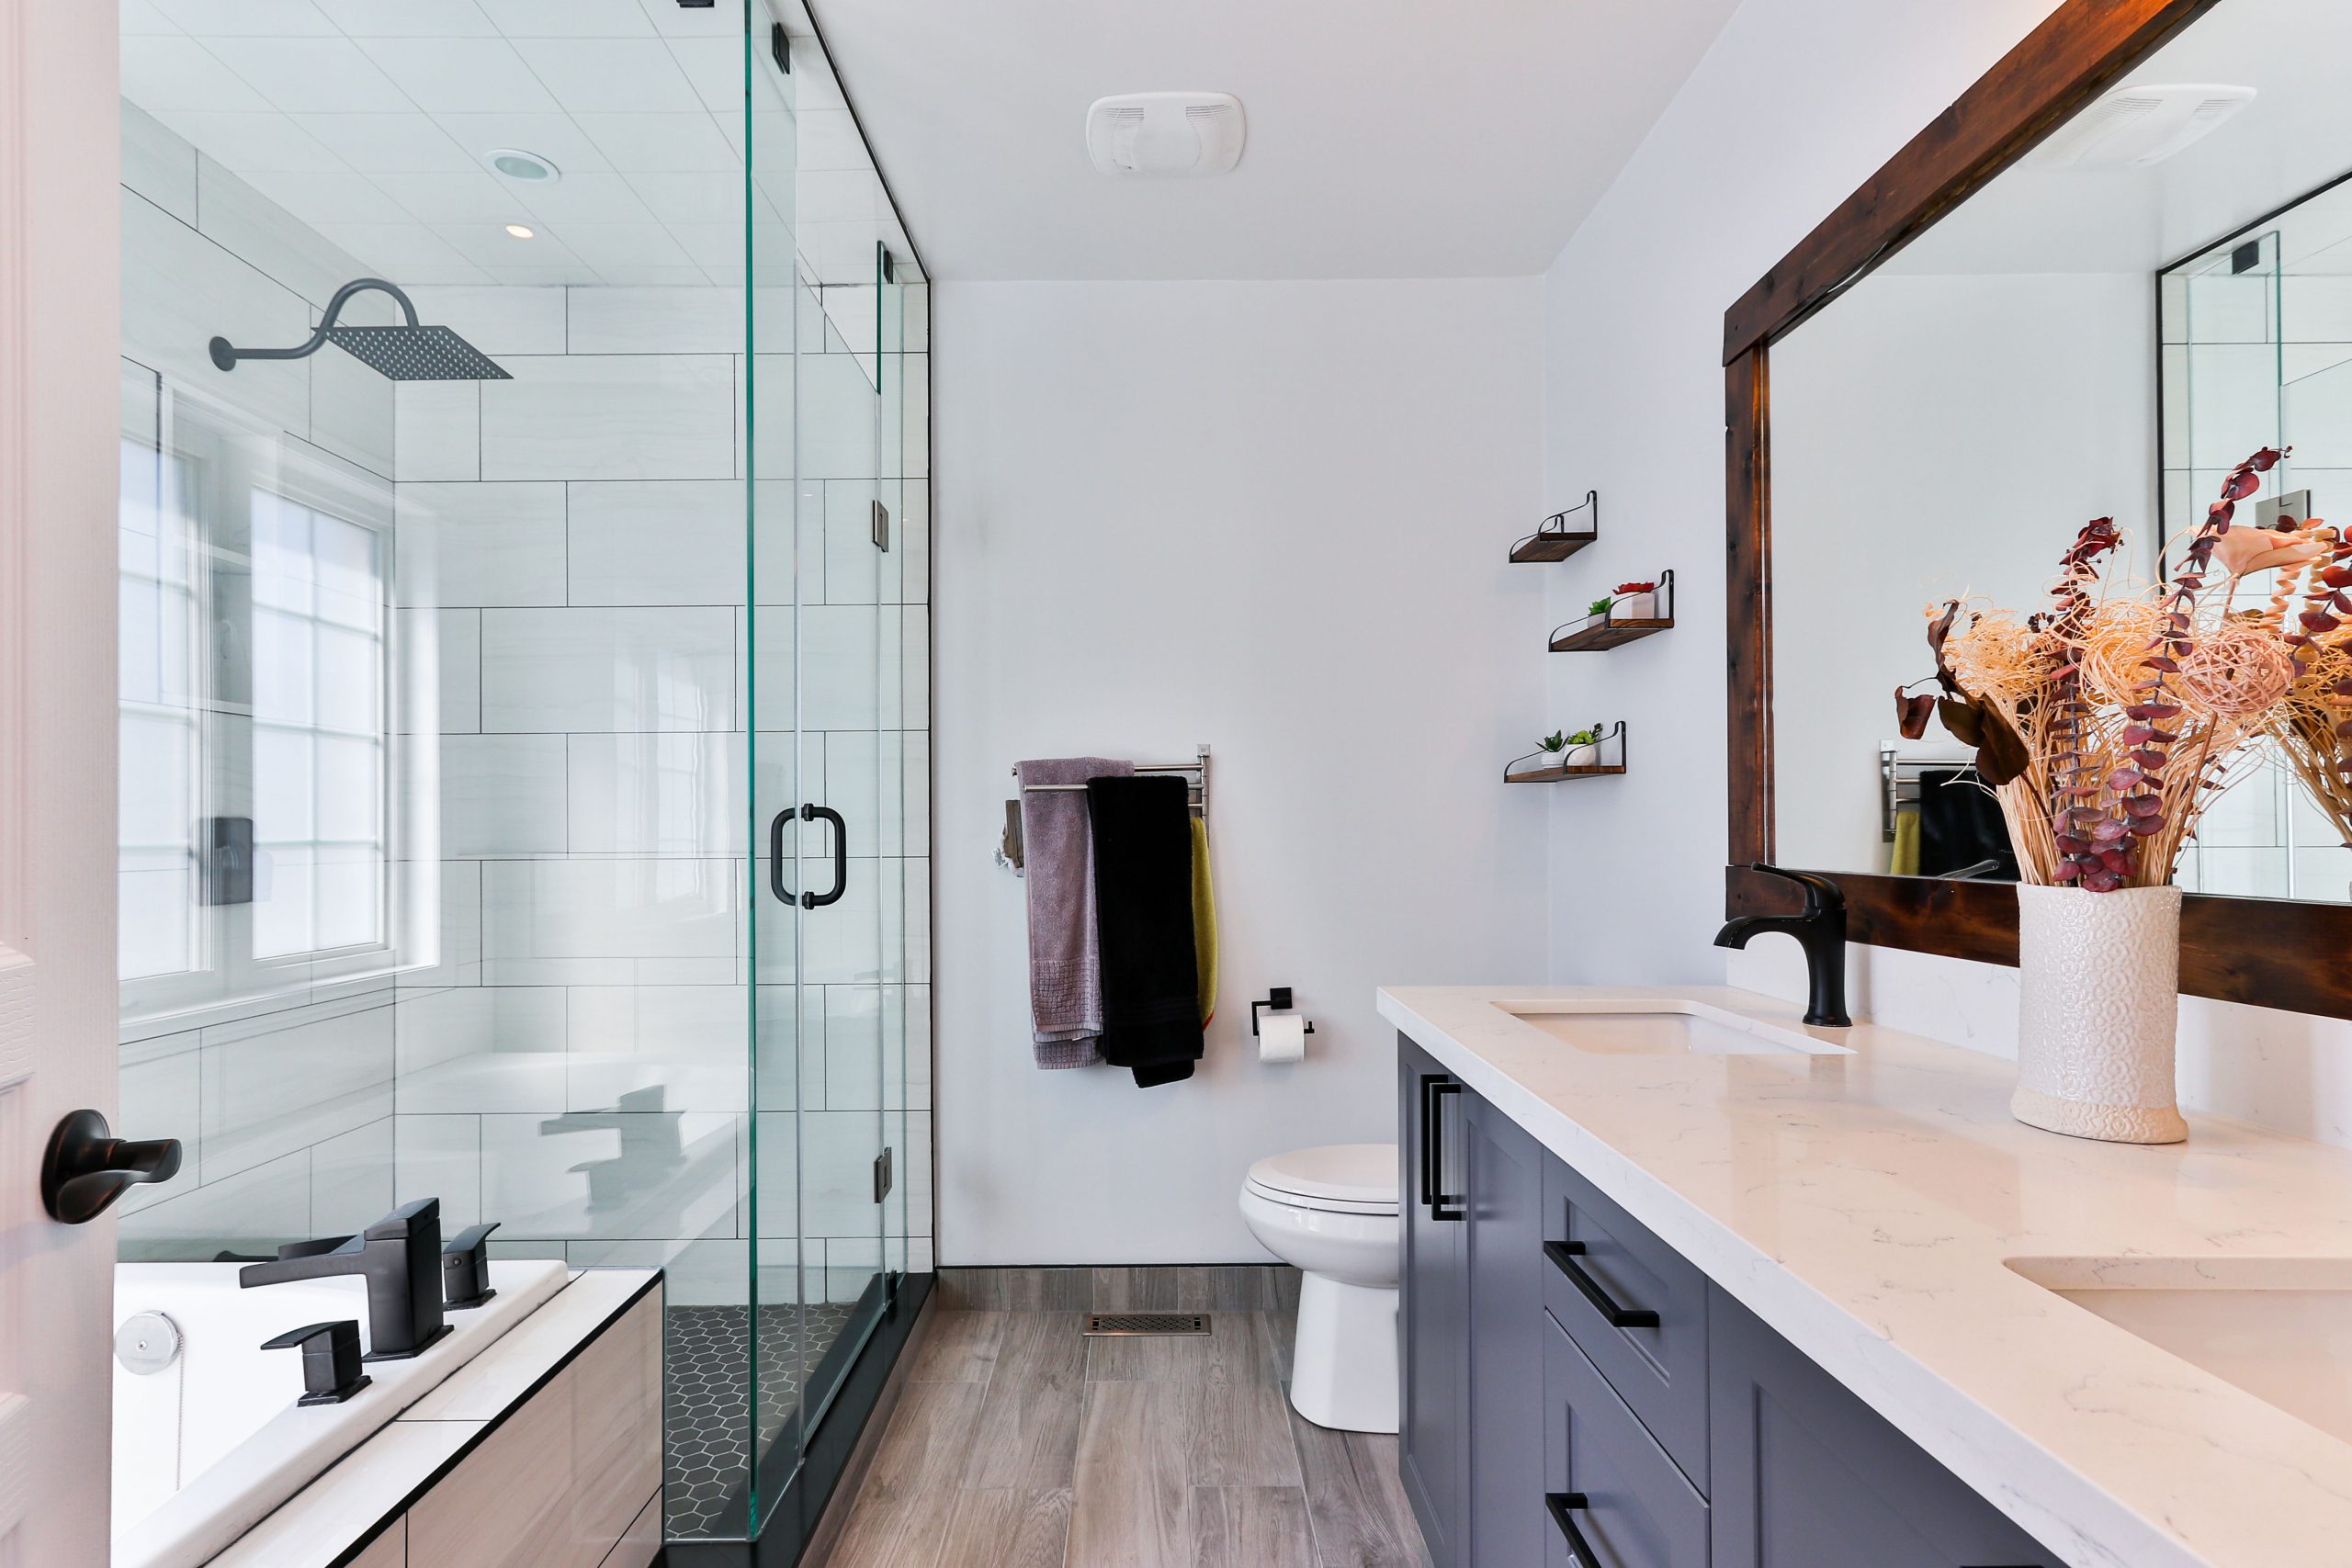 Niezbędne elementy przytulnej łazienki których potrzebujesz, aby stworzyć wygodne, relaksujące otoczenie